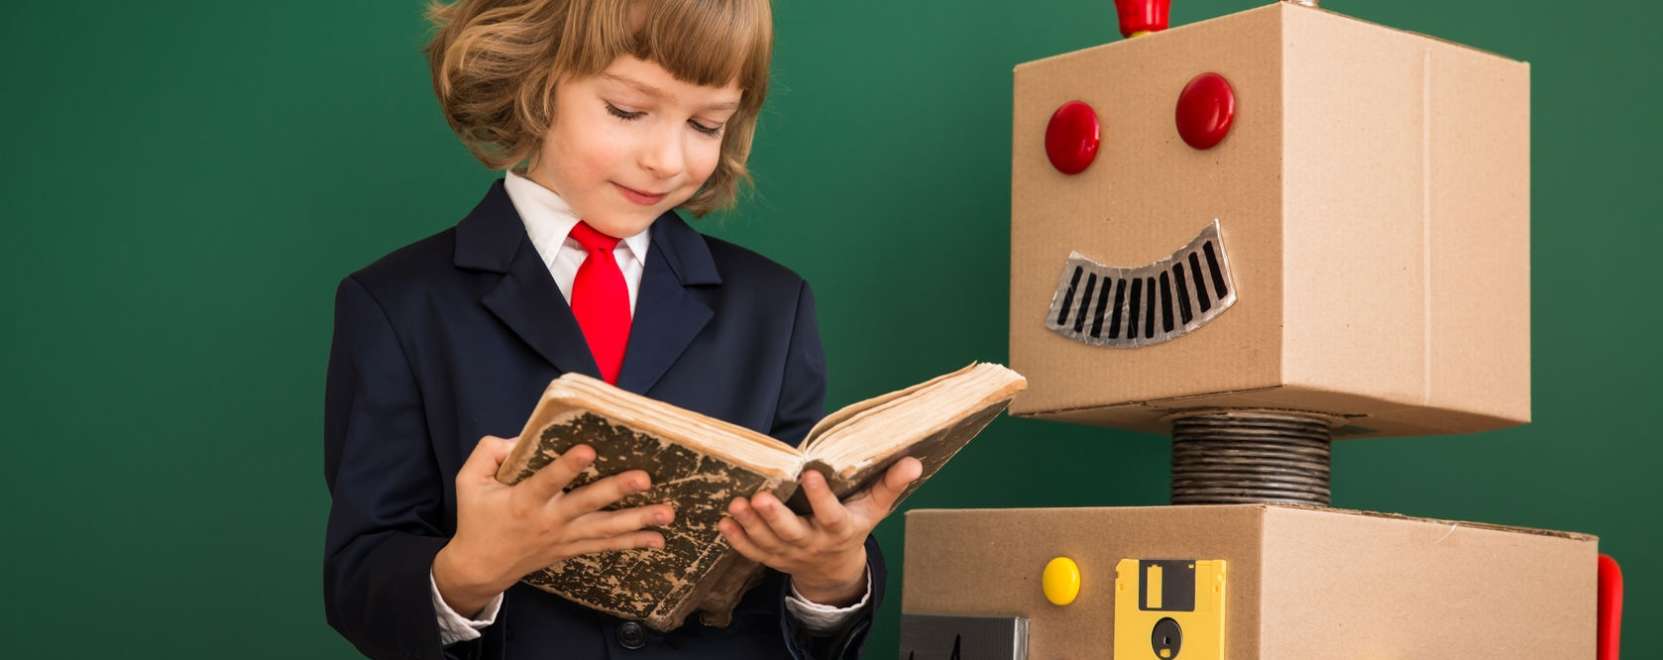 Ügyetlen robot lehet a gyerek padtársa